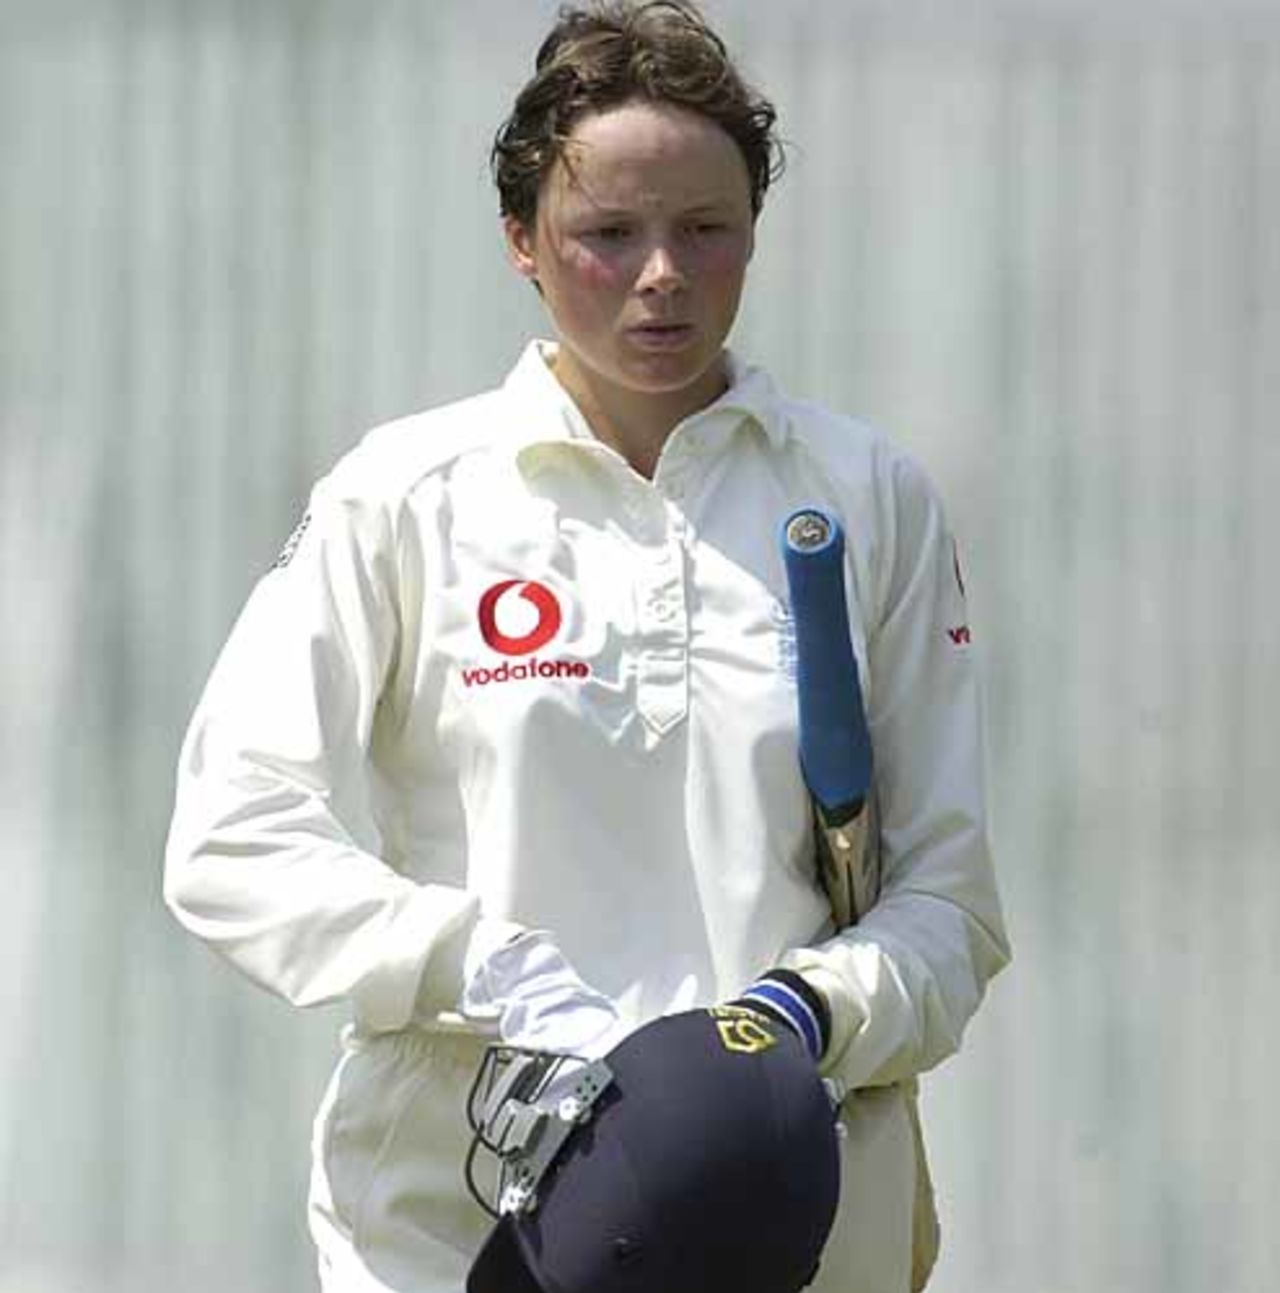 England Women v Australia Women, Denis Compton Oval, Shenley, 24 June 2001